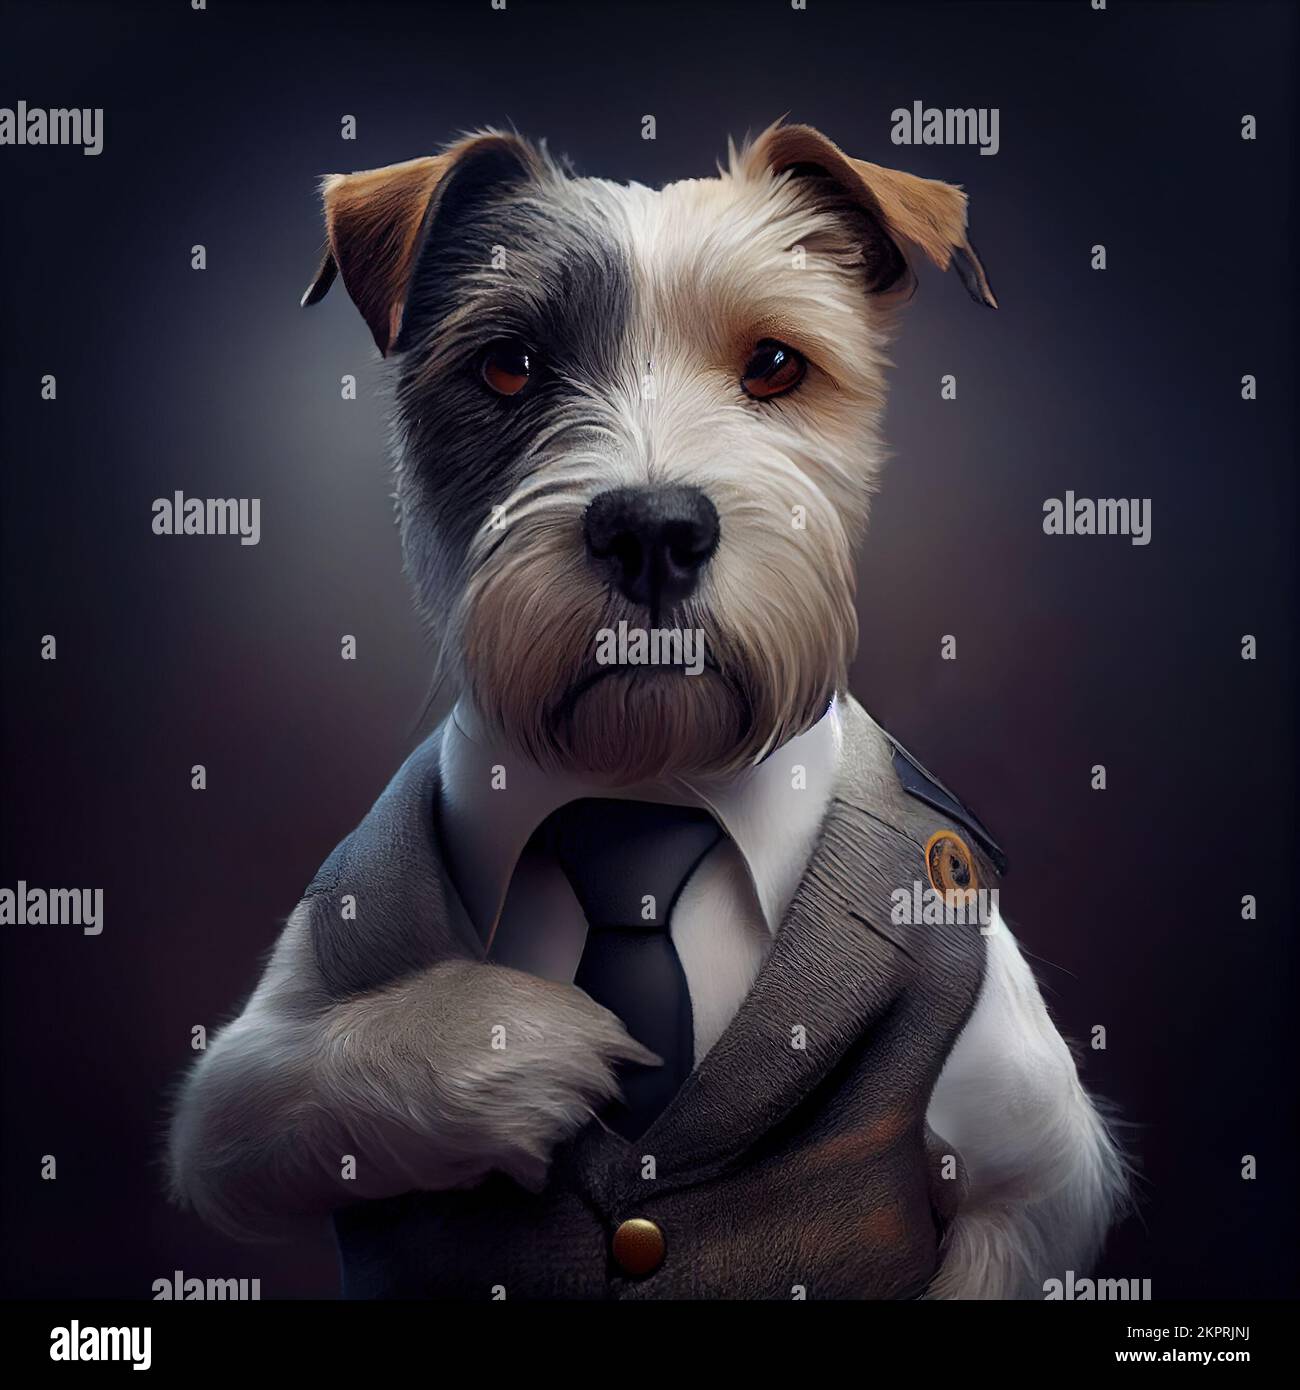 Estudio antropomórfico de un lindo perro Terrier en un traje. Ilustración generada digitalmente. Foto de stock